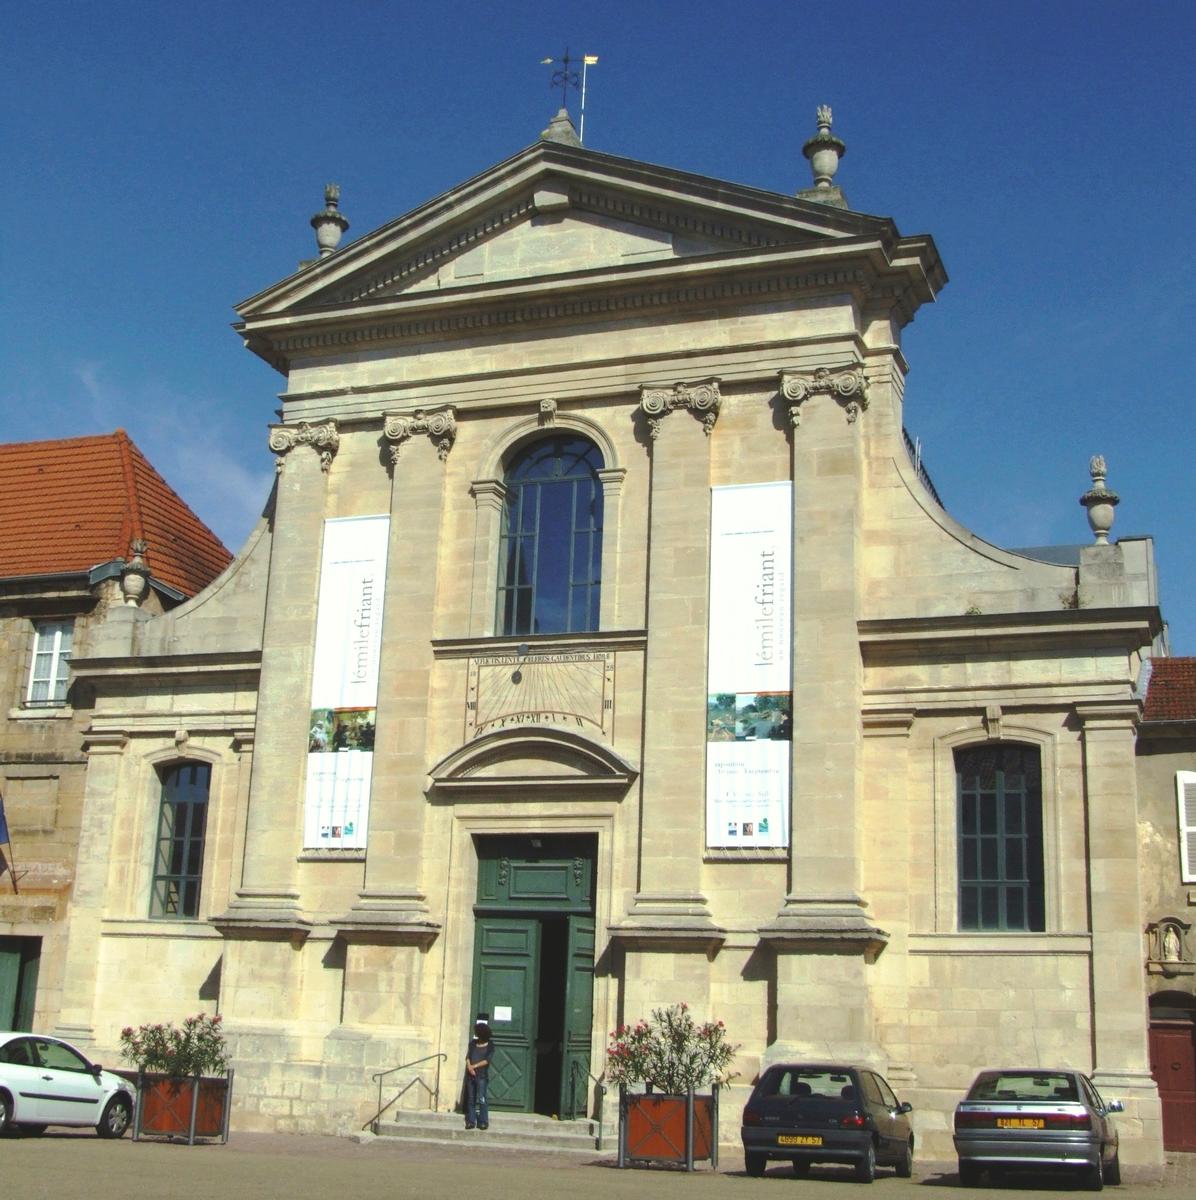 Vic-sur-Seille - former Carmelite convent 